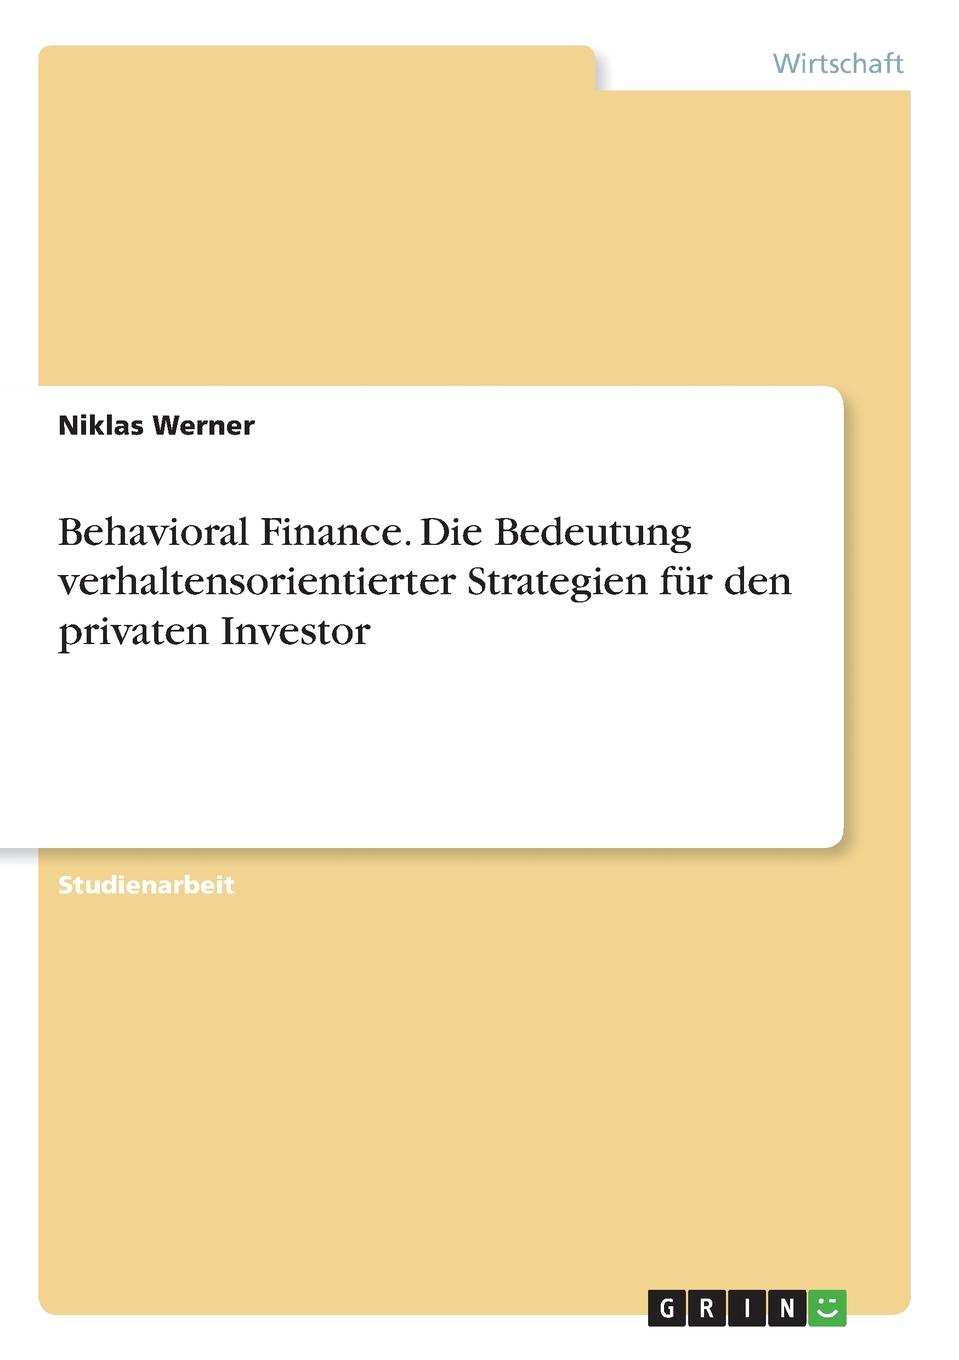 Behavioral Finance. Die Bedeutung verhaltensorientierter Strategien fur den privaten Investor